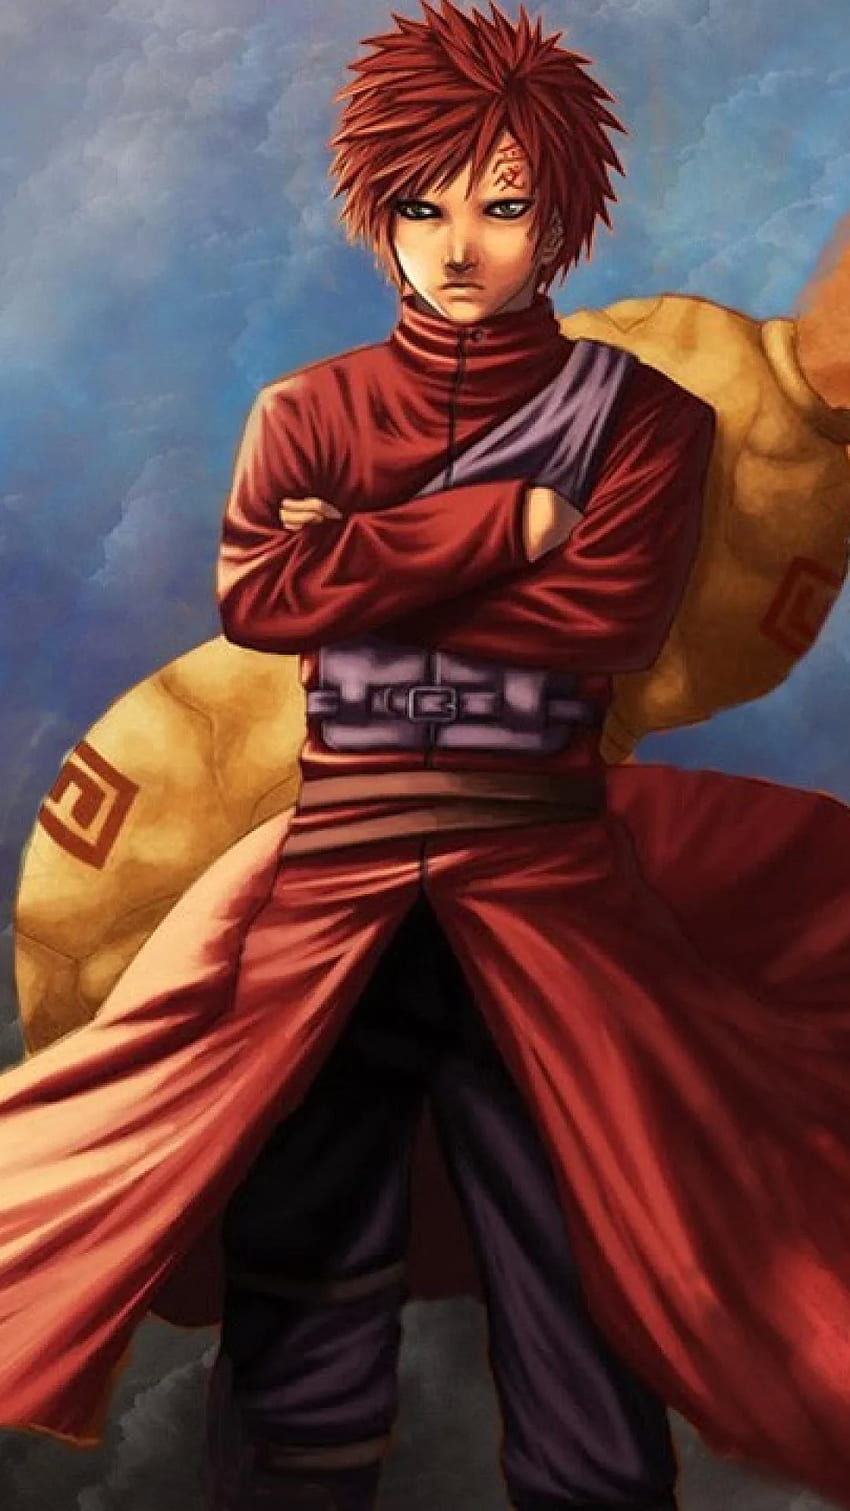 Gaara chắc chắn là một trong những nhân vật ấn tượng nhất trong Naruto. Hãy lựa chọn một hình nền Naruto với Gaara - một ninja đầy tài năng, sẵn sàng chiến đấu cho bất cứ ai tin vào mình. Ảnh liên quan sẽ khiến bạn say mê và mê hoặc ngay từ cái nhìn đầu tiên.